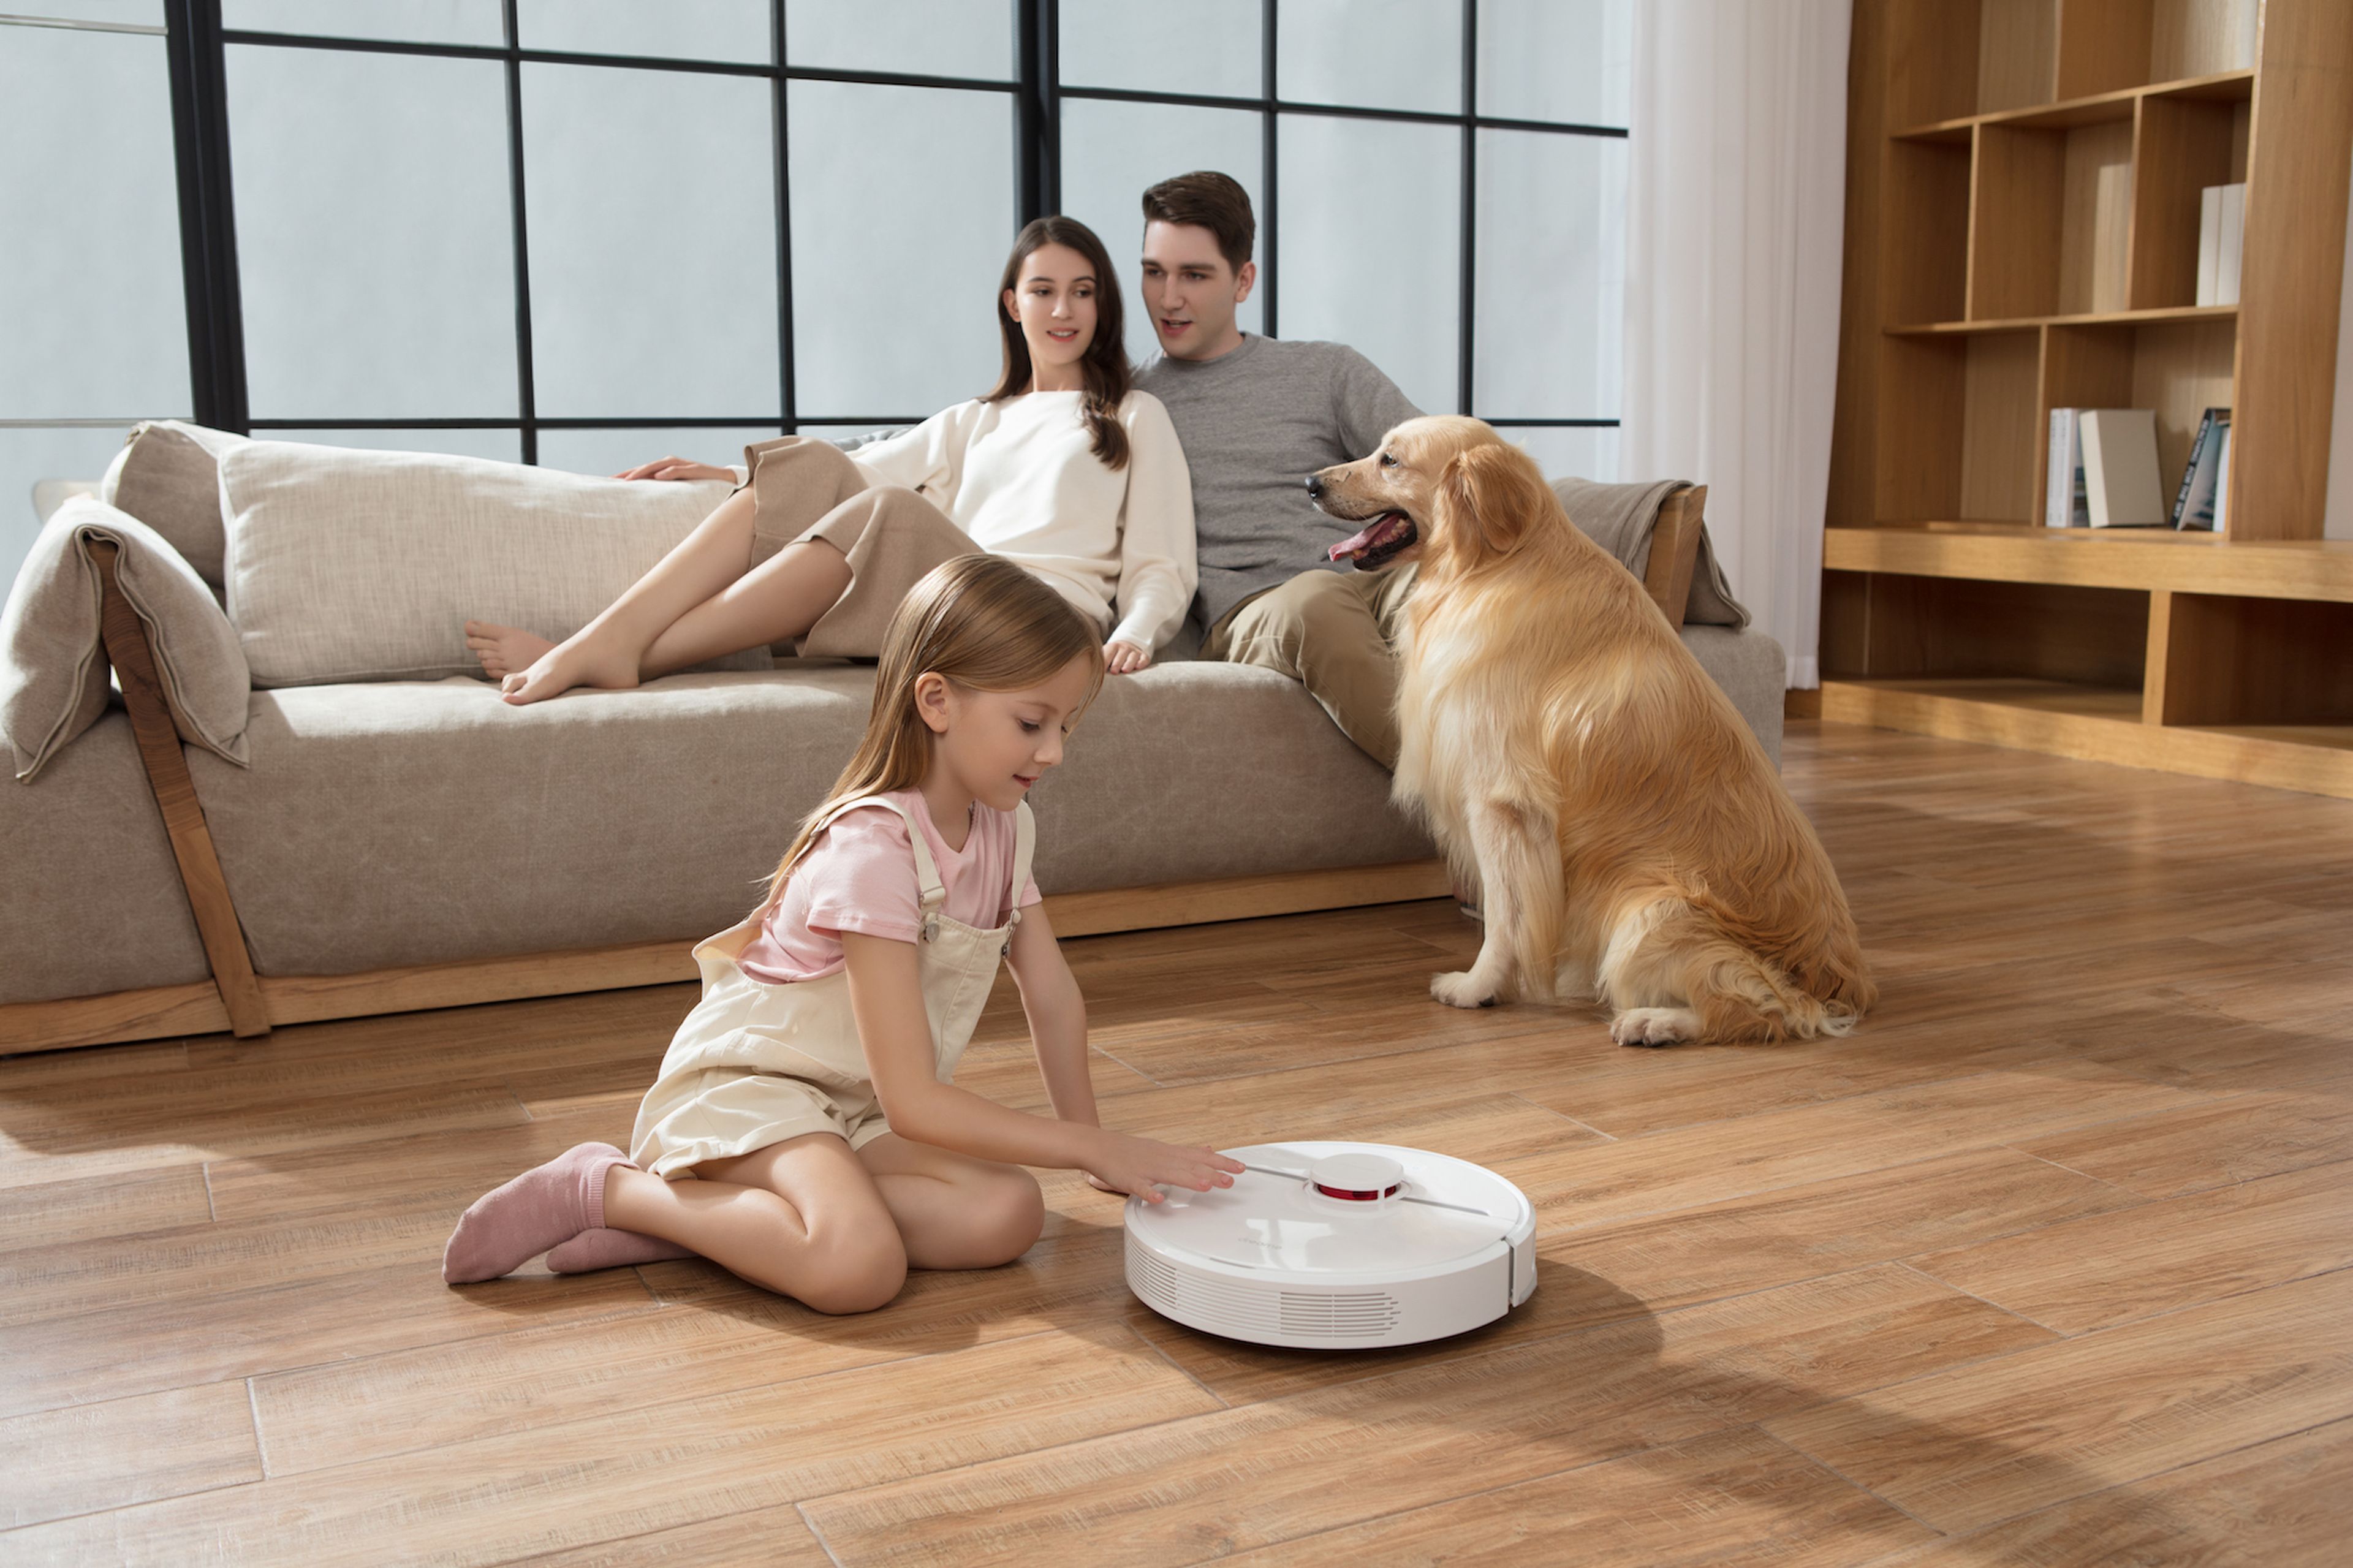 Roomba Pet, la aspiradora-robot especializada en mascotas